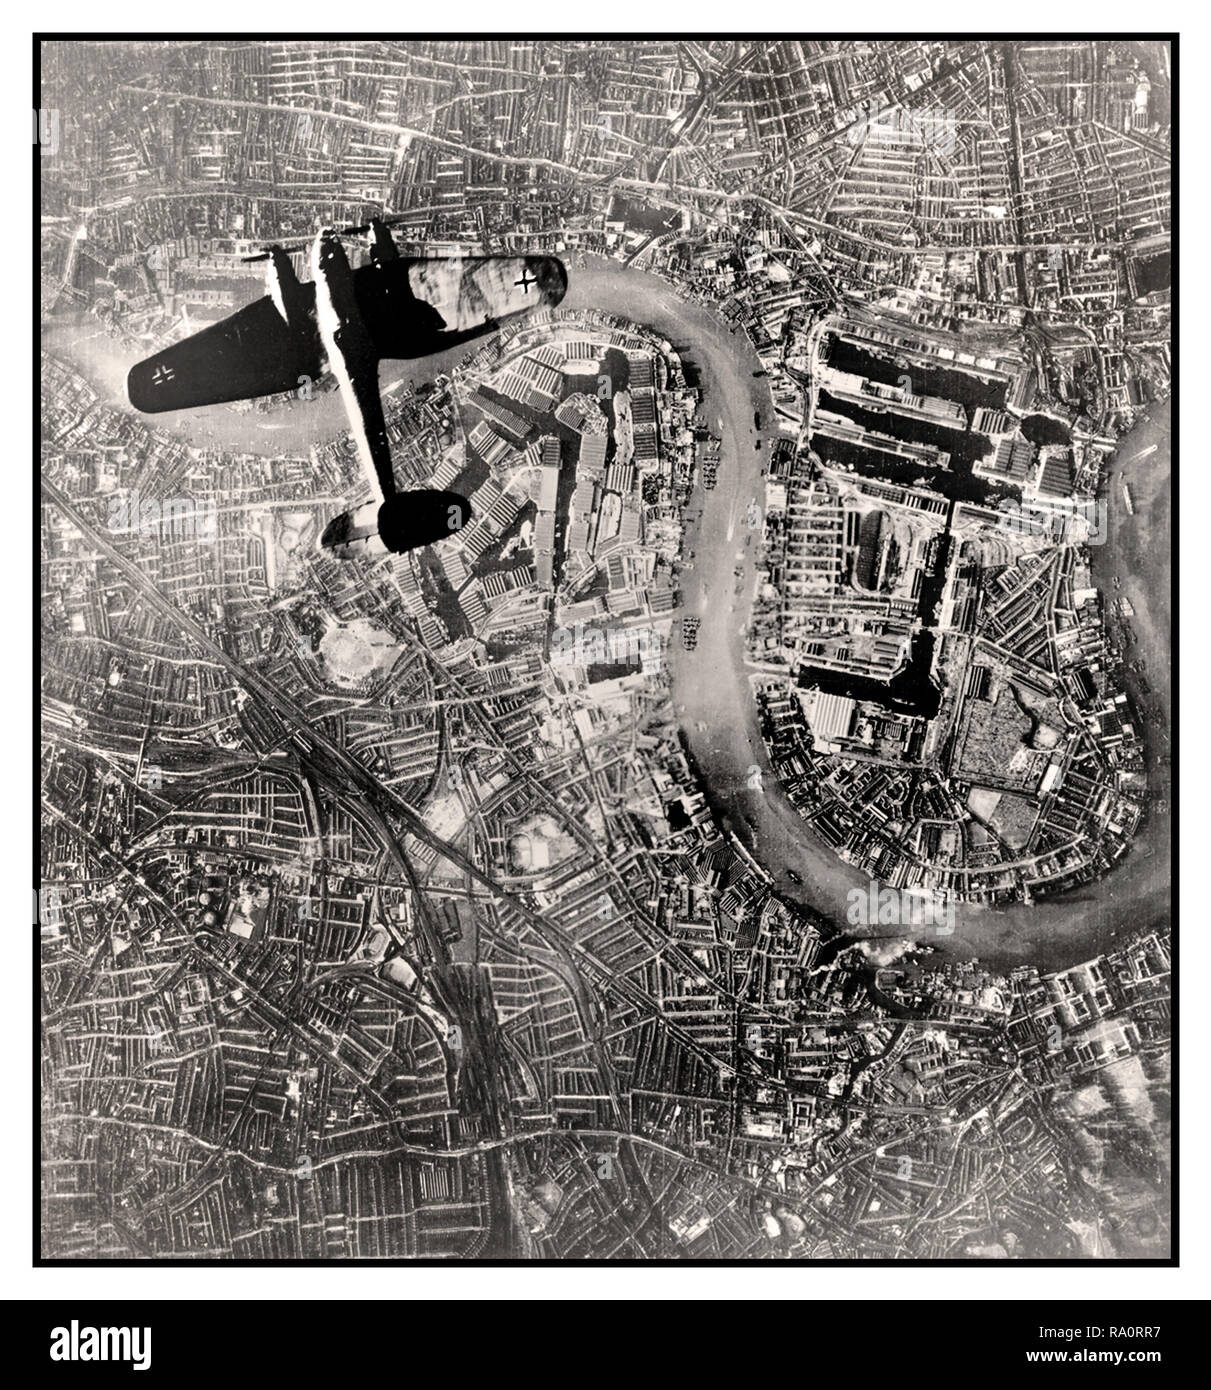 La Luftwaffe NAZIE LONDON BLITZ BOMBER Vintage WW2 image aérienne d'un Nazi Allemagne Luftwaffe bombardier Heinkel He111 sur un bombardement de jour en survolant le centre de Londres, le 7 septembre 1940. Cette remarquable image prise par la Luftwaffe nazie, a été découverte après la DEUXIÈME GUERRE MONDIALE dans une archive inédite de photographies aériennes allemandes. Visible directement ci-dessous est un objectif clé pour la Luftwaffe, le complexe industriel de la Royal Docks sur la Tamise Londres Banque D'Images